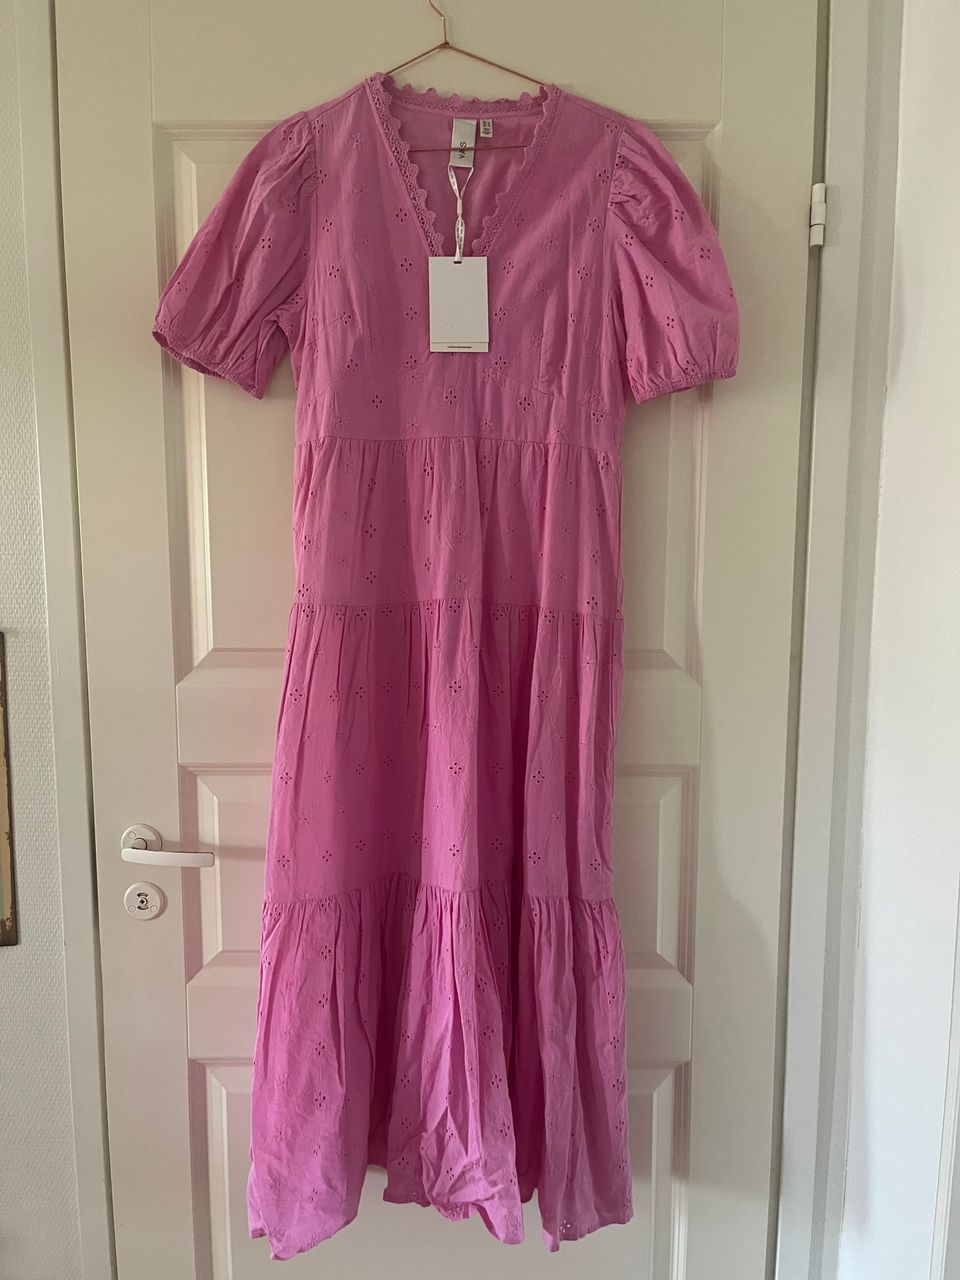 Yas uusi pinkki mekko